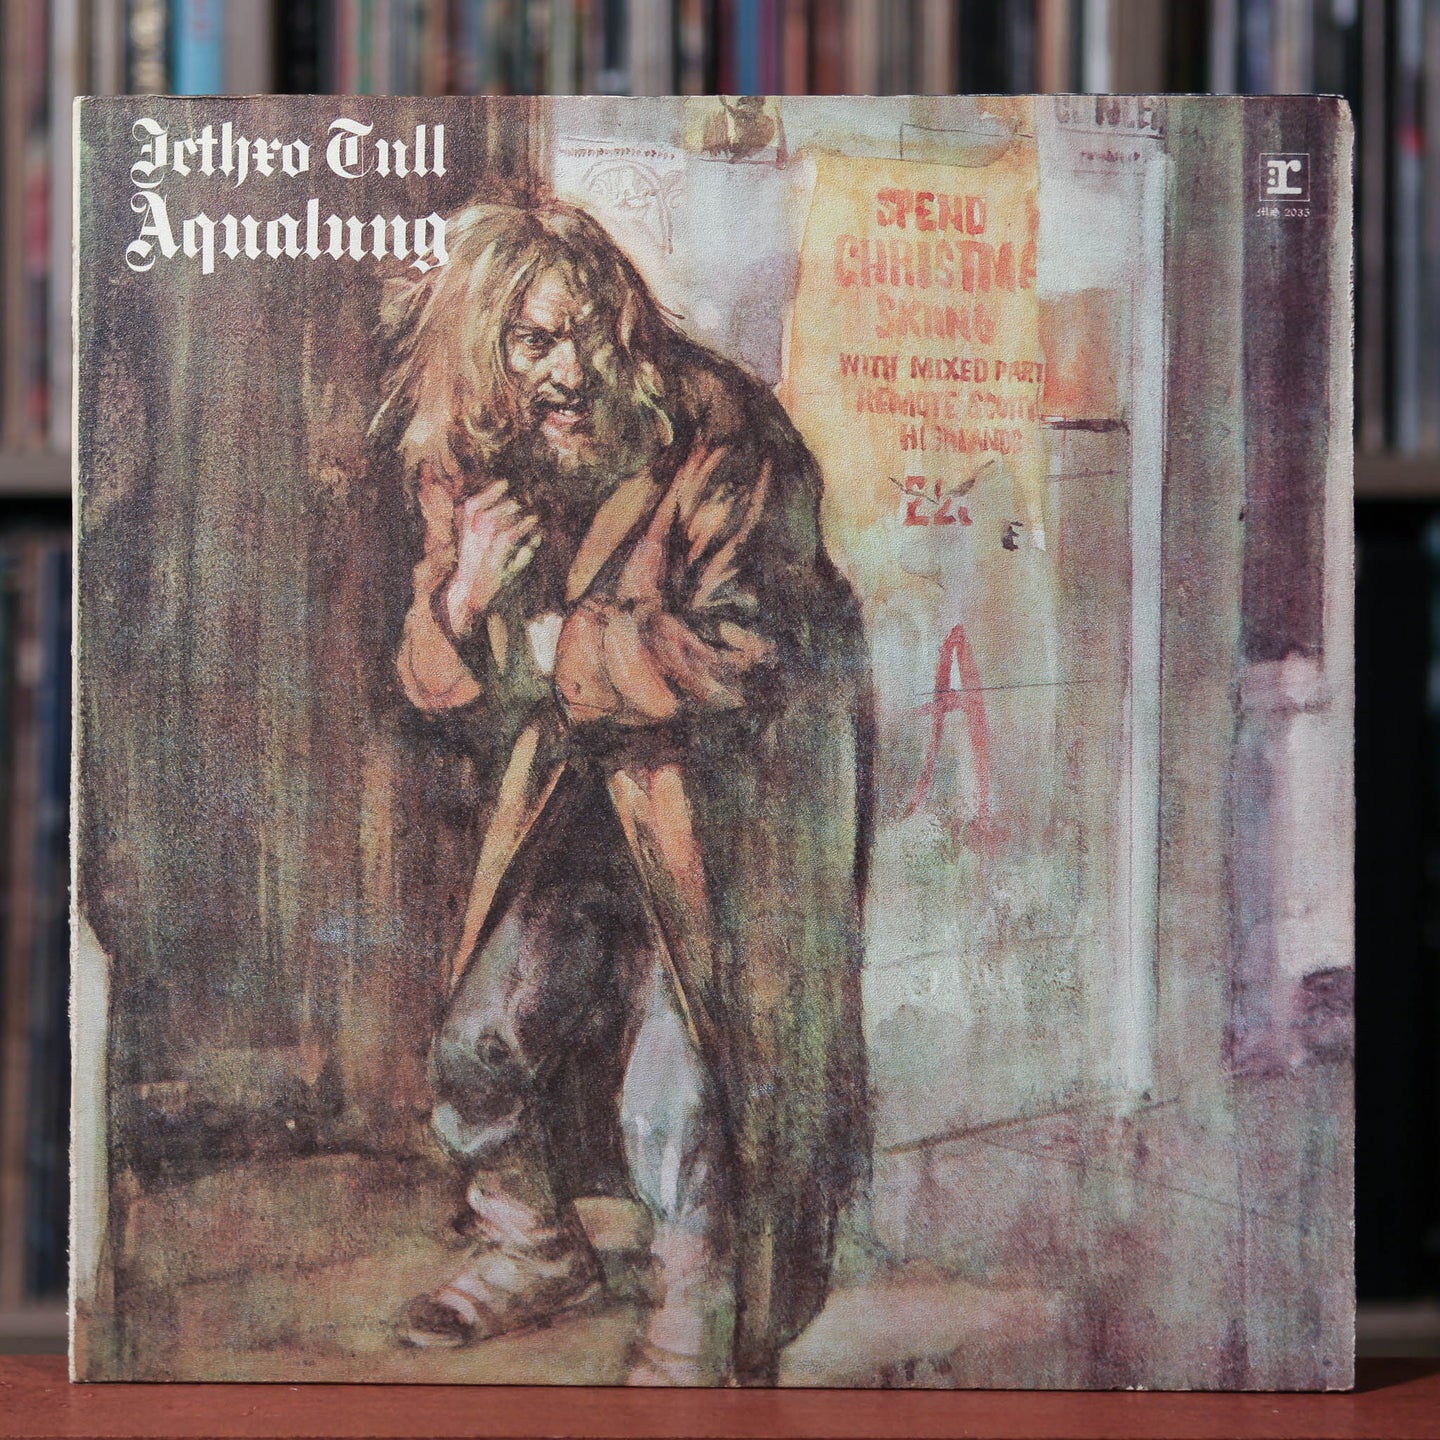 Jethro Tull - 3 Album Bundle - Aqualung - Living In The Past - M.U. Best of